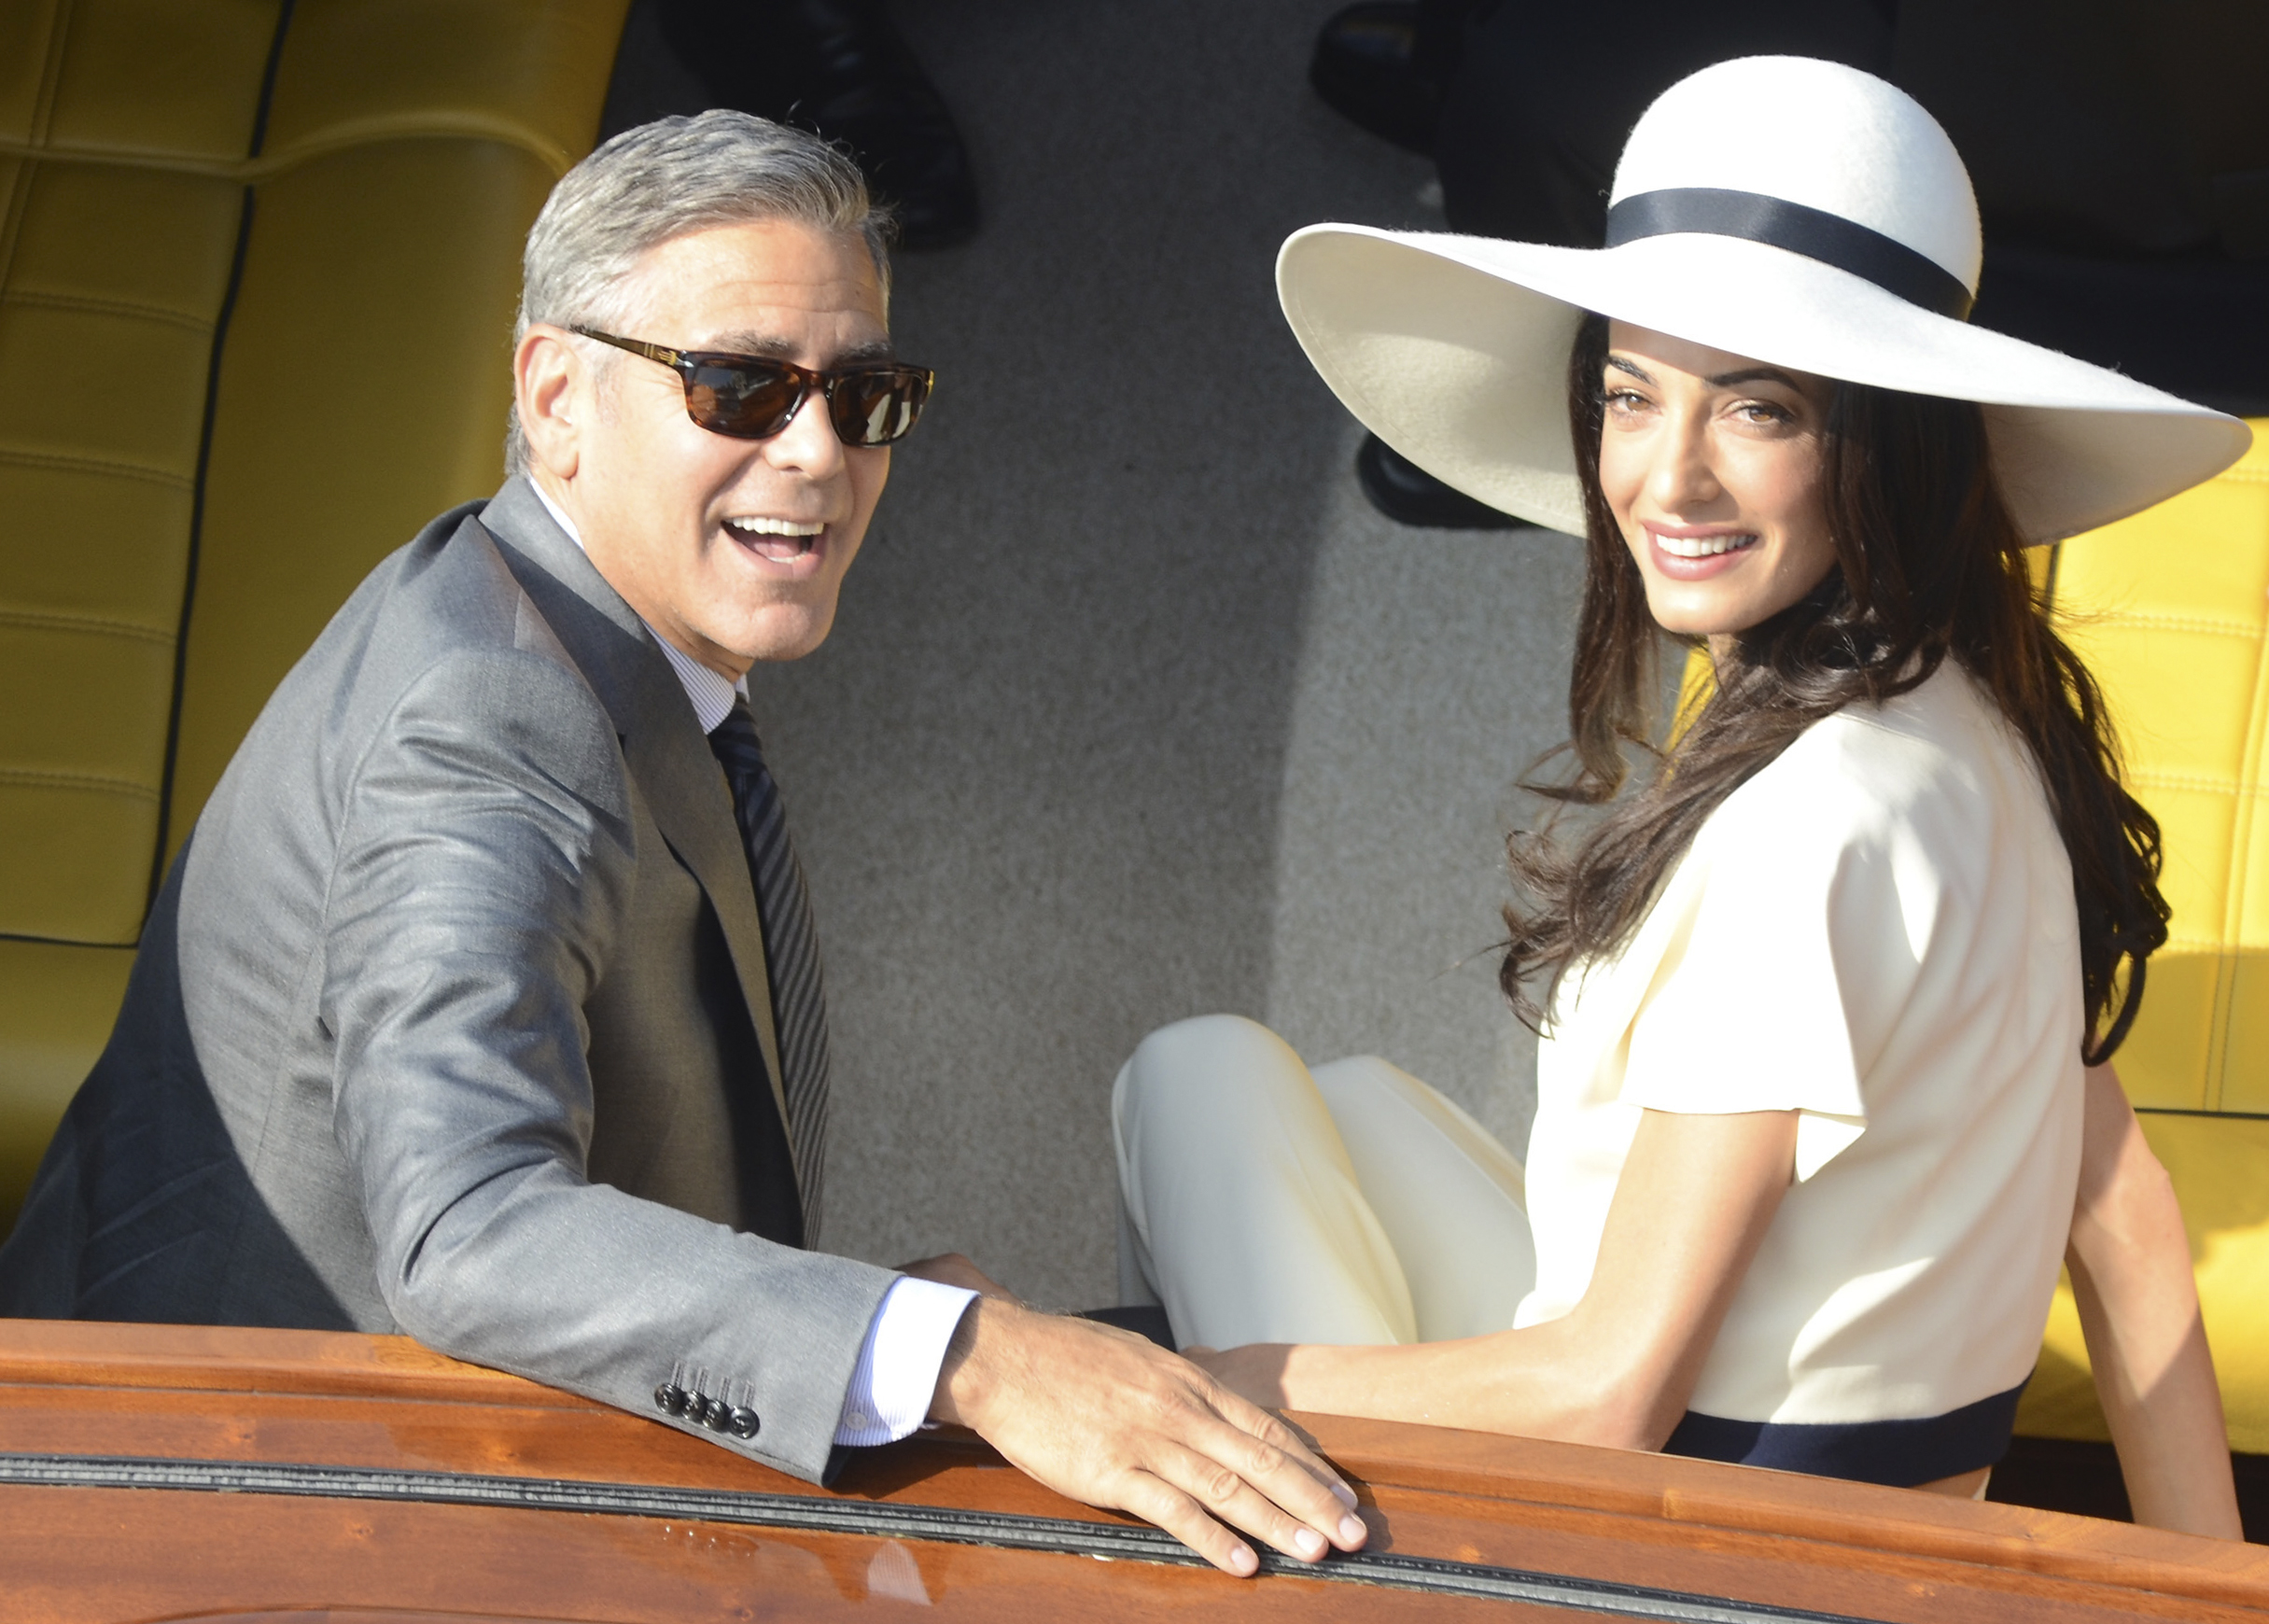 Italy Clooney Wedding